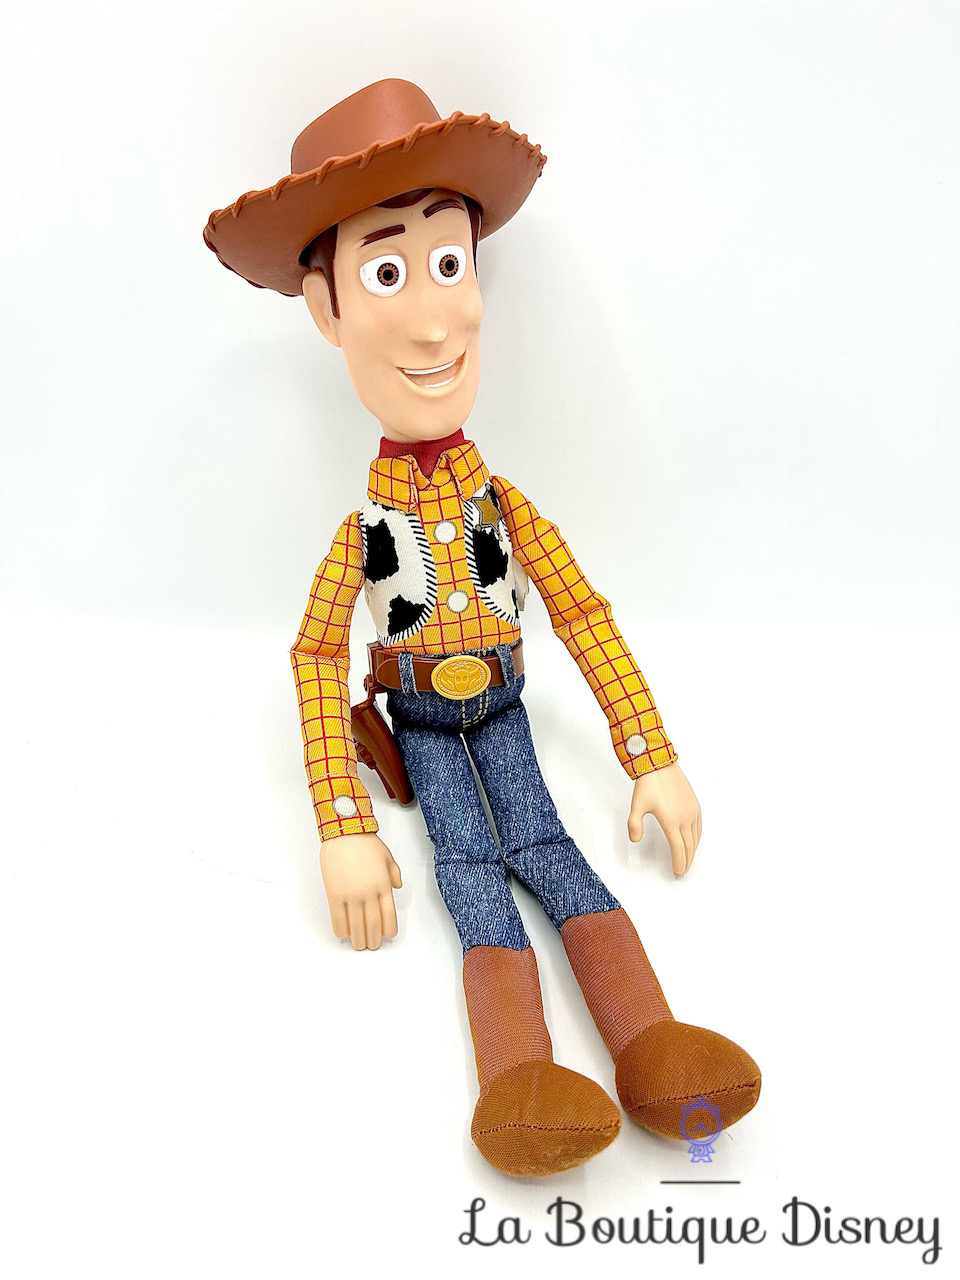 Toy Story 4 woody figurine parlant français GFR19 Jouet de reve